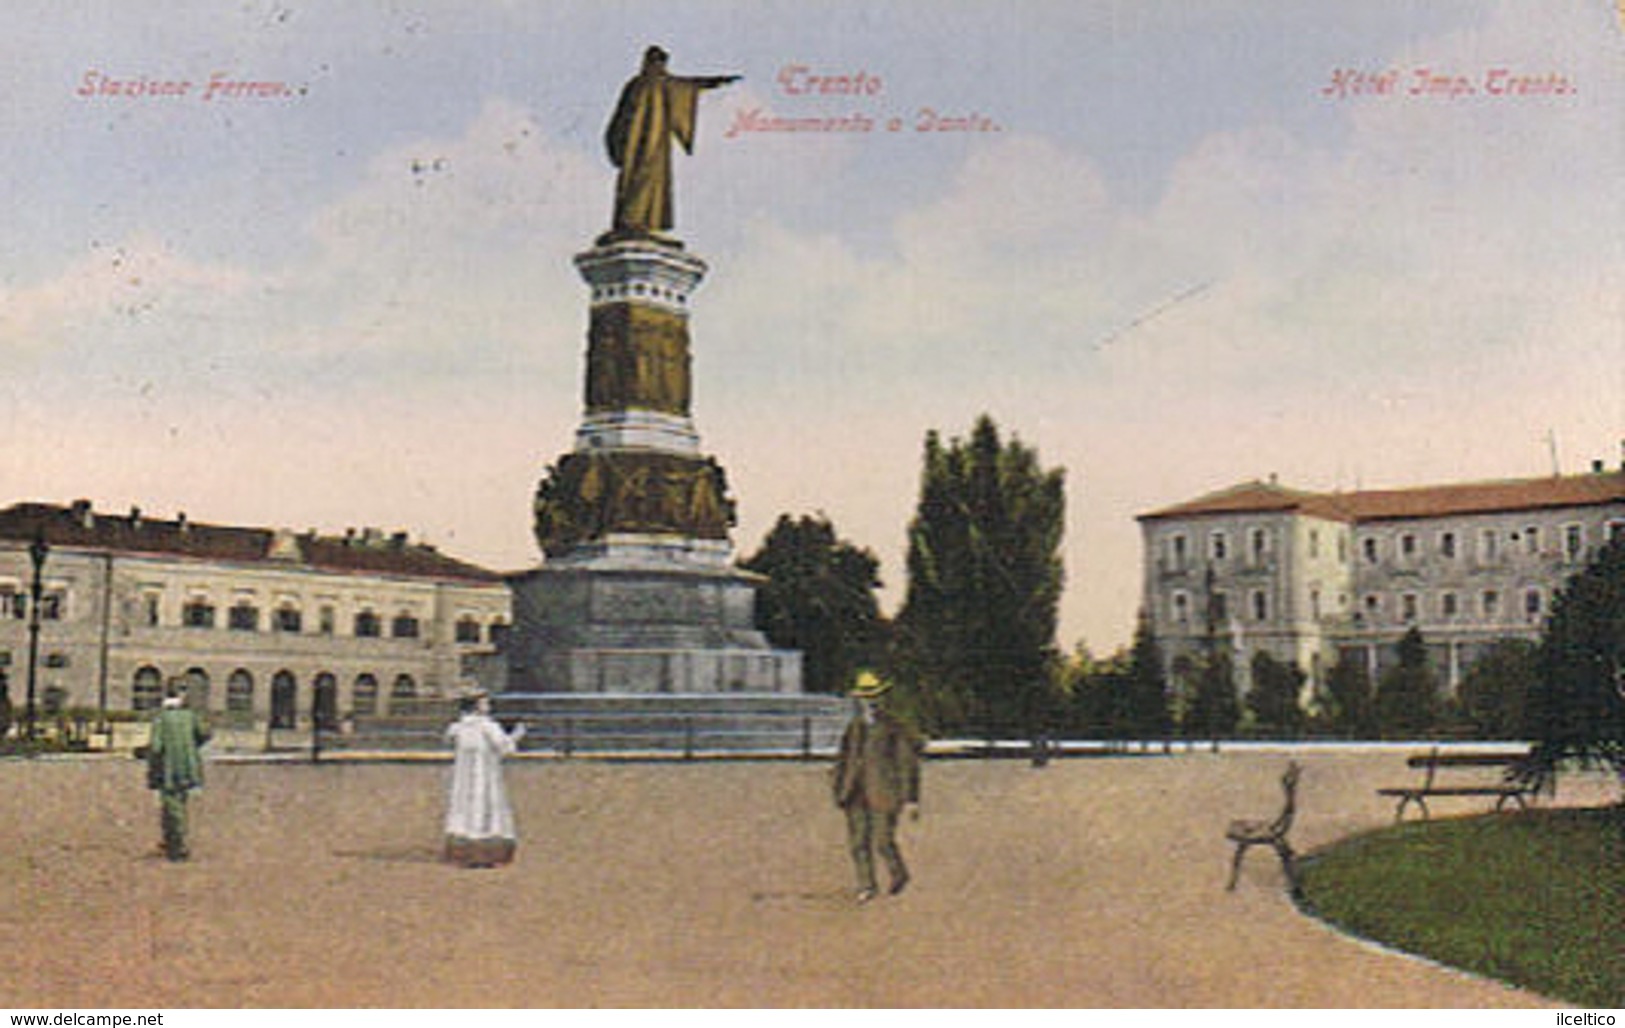 TRENTO  - STAZIONE FERROVIARIA- HOTEL IMPERATORE - MON. A DANTE  - 1909 - Trento